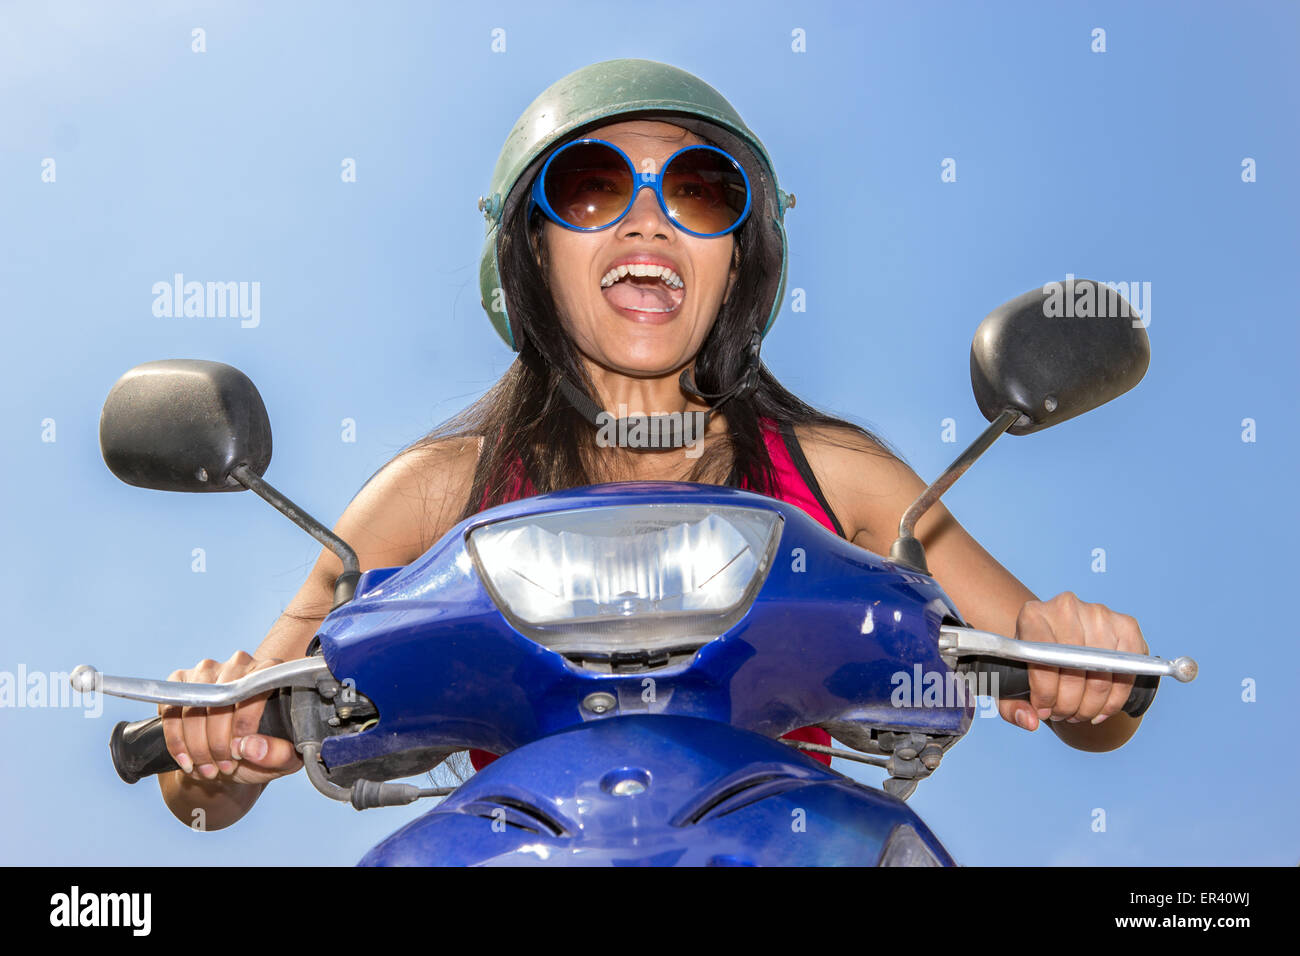 Vue de face d'une femme assise sur un scooter sur un fond bleu Banque D'Images